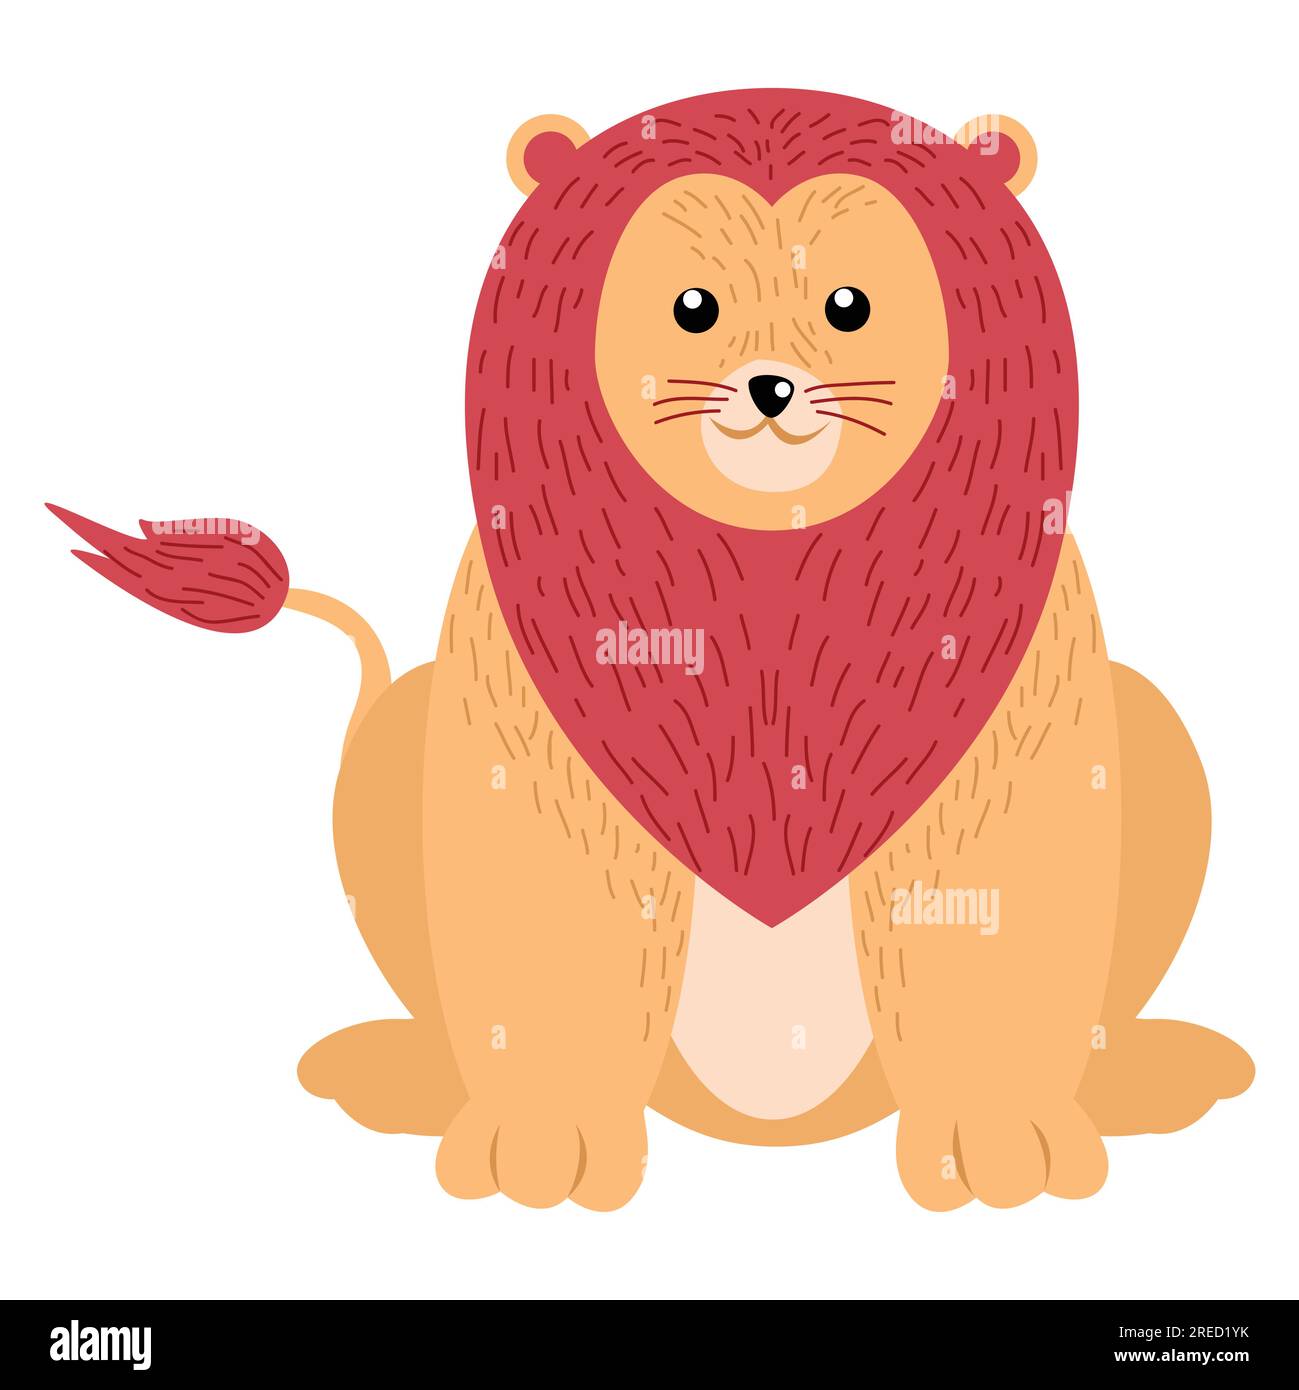 Joli dessin animé d'un lion isolé sur fond blanc Illustration de Vecteur